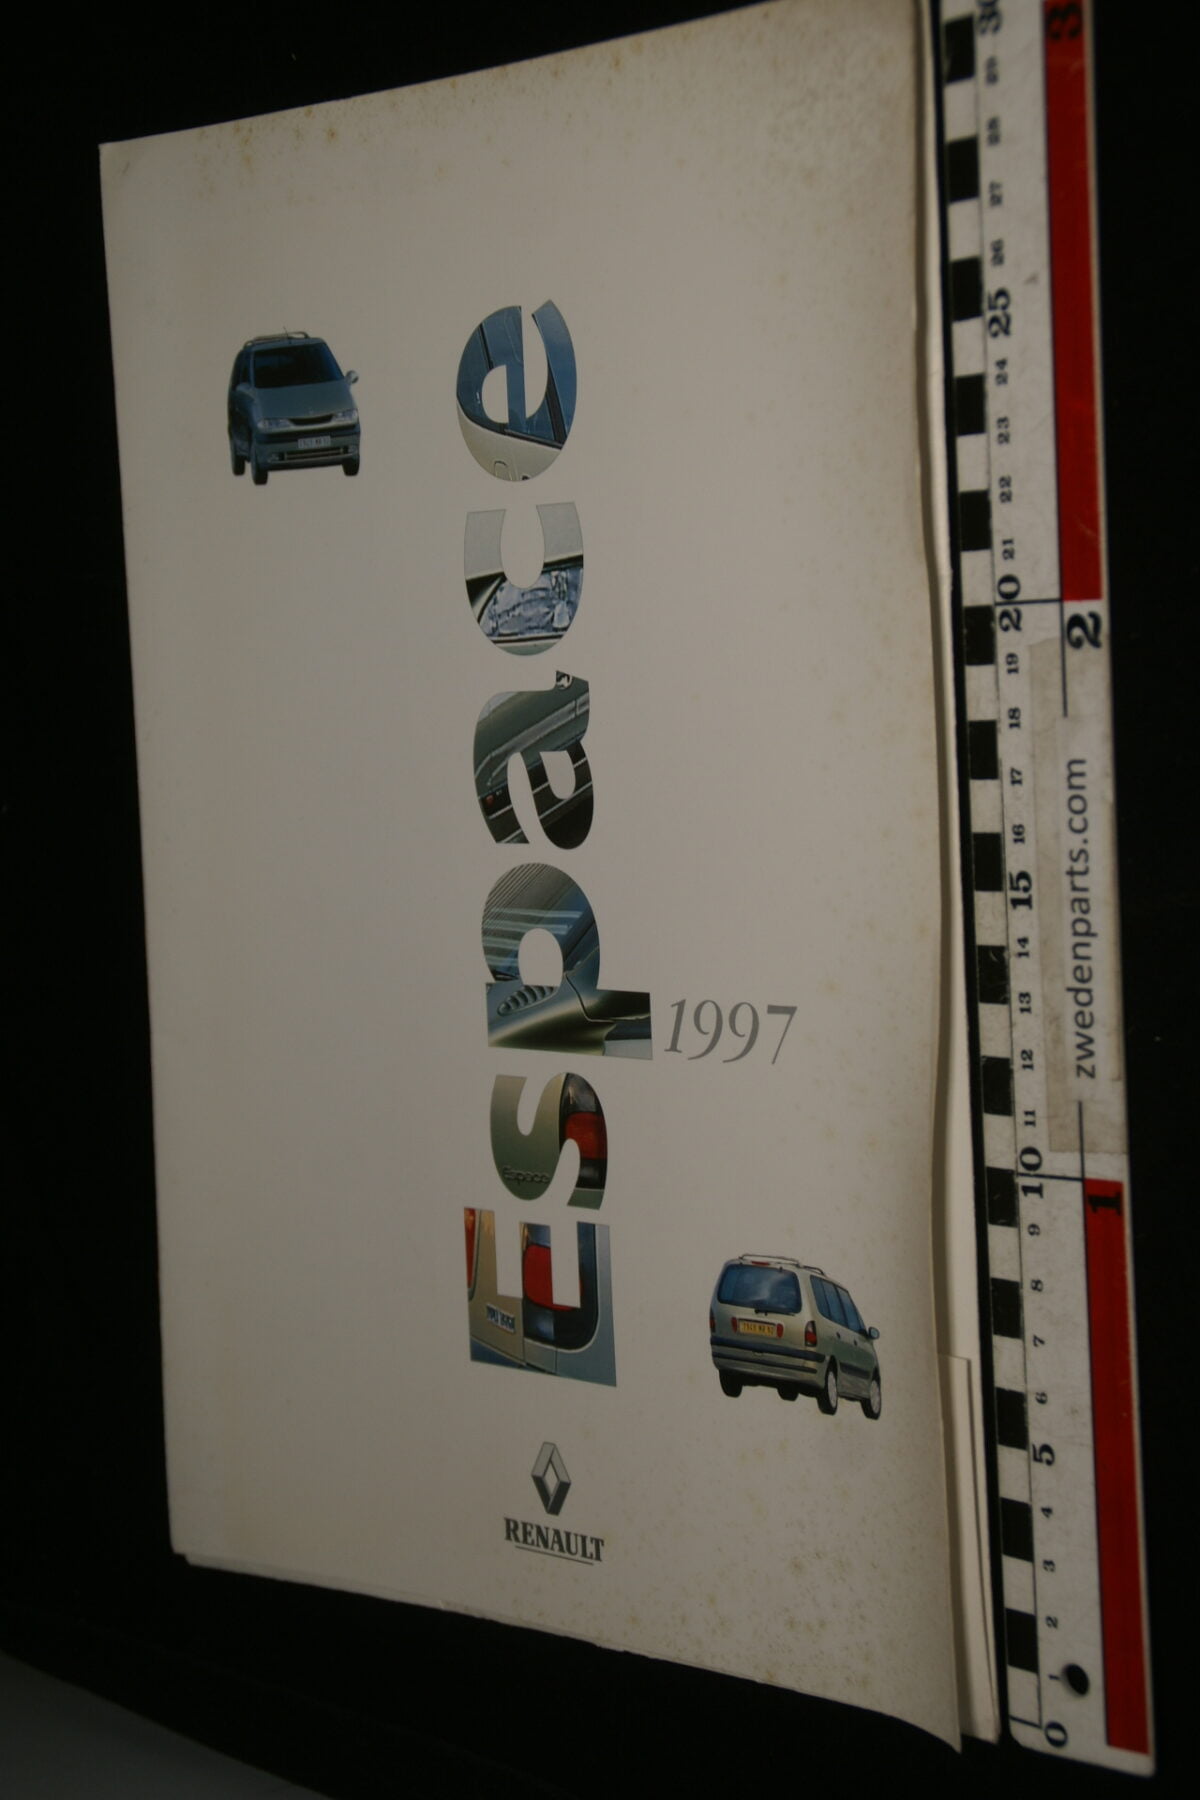 DSC09984 1997 originele persmap Renault Espace-89ad041c